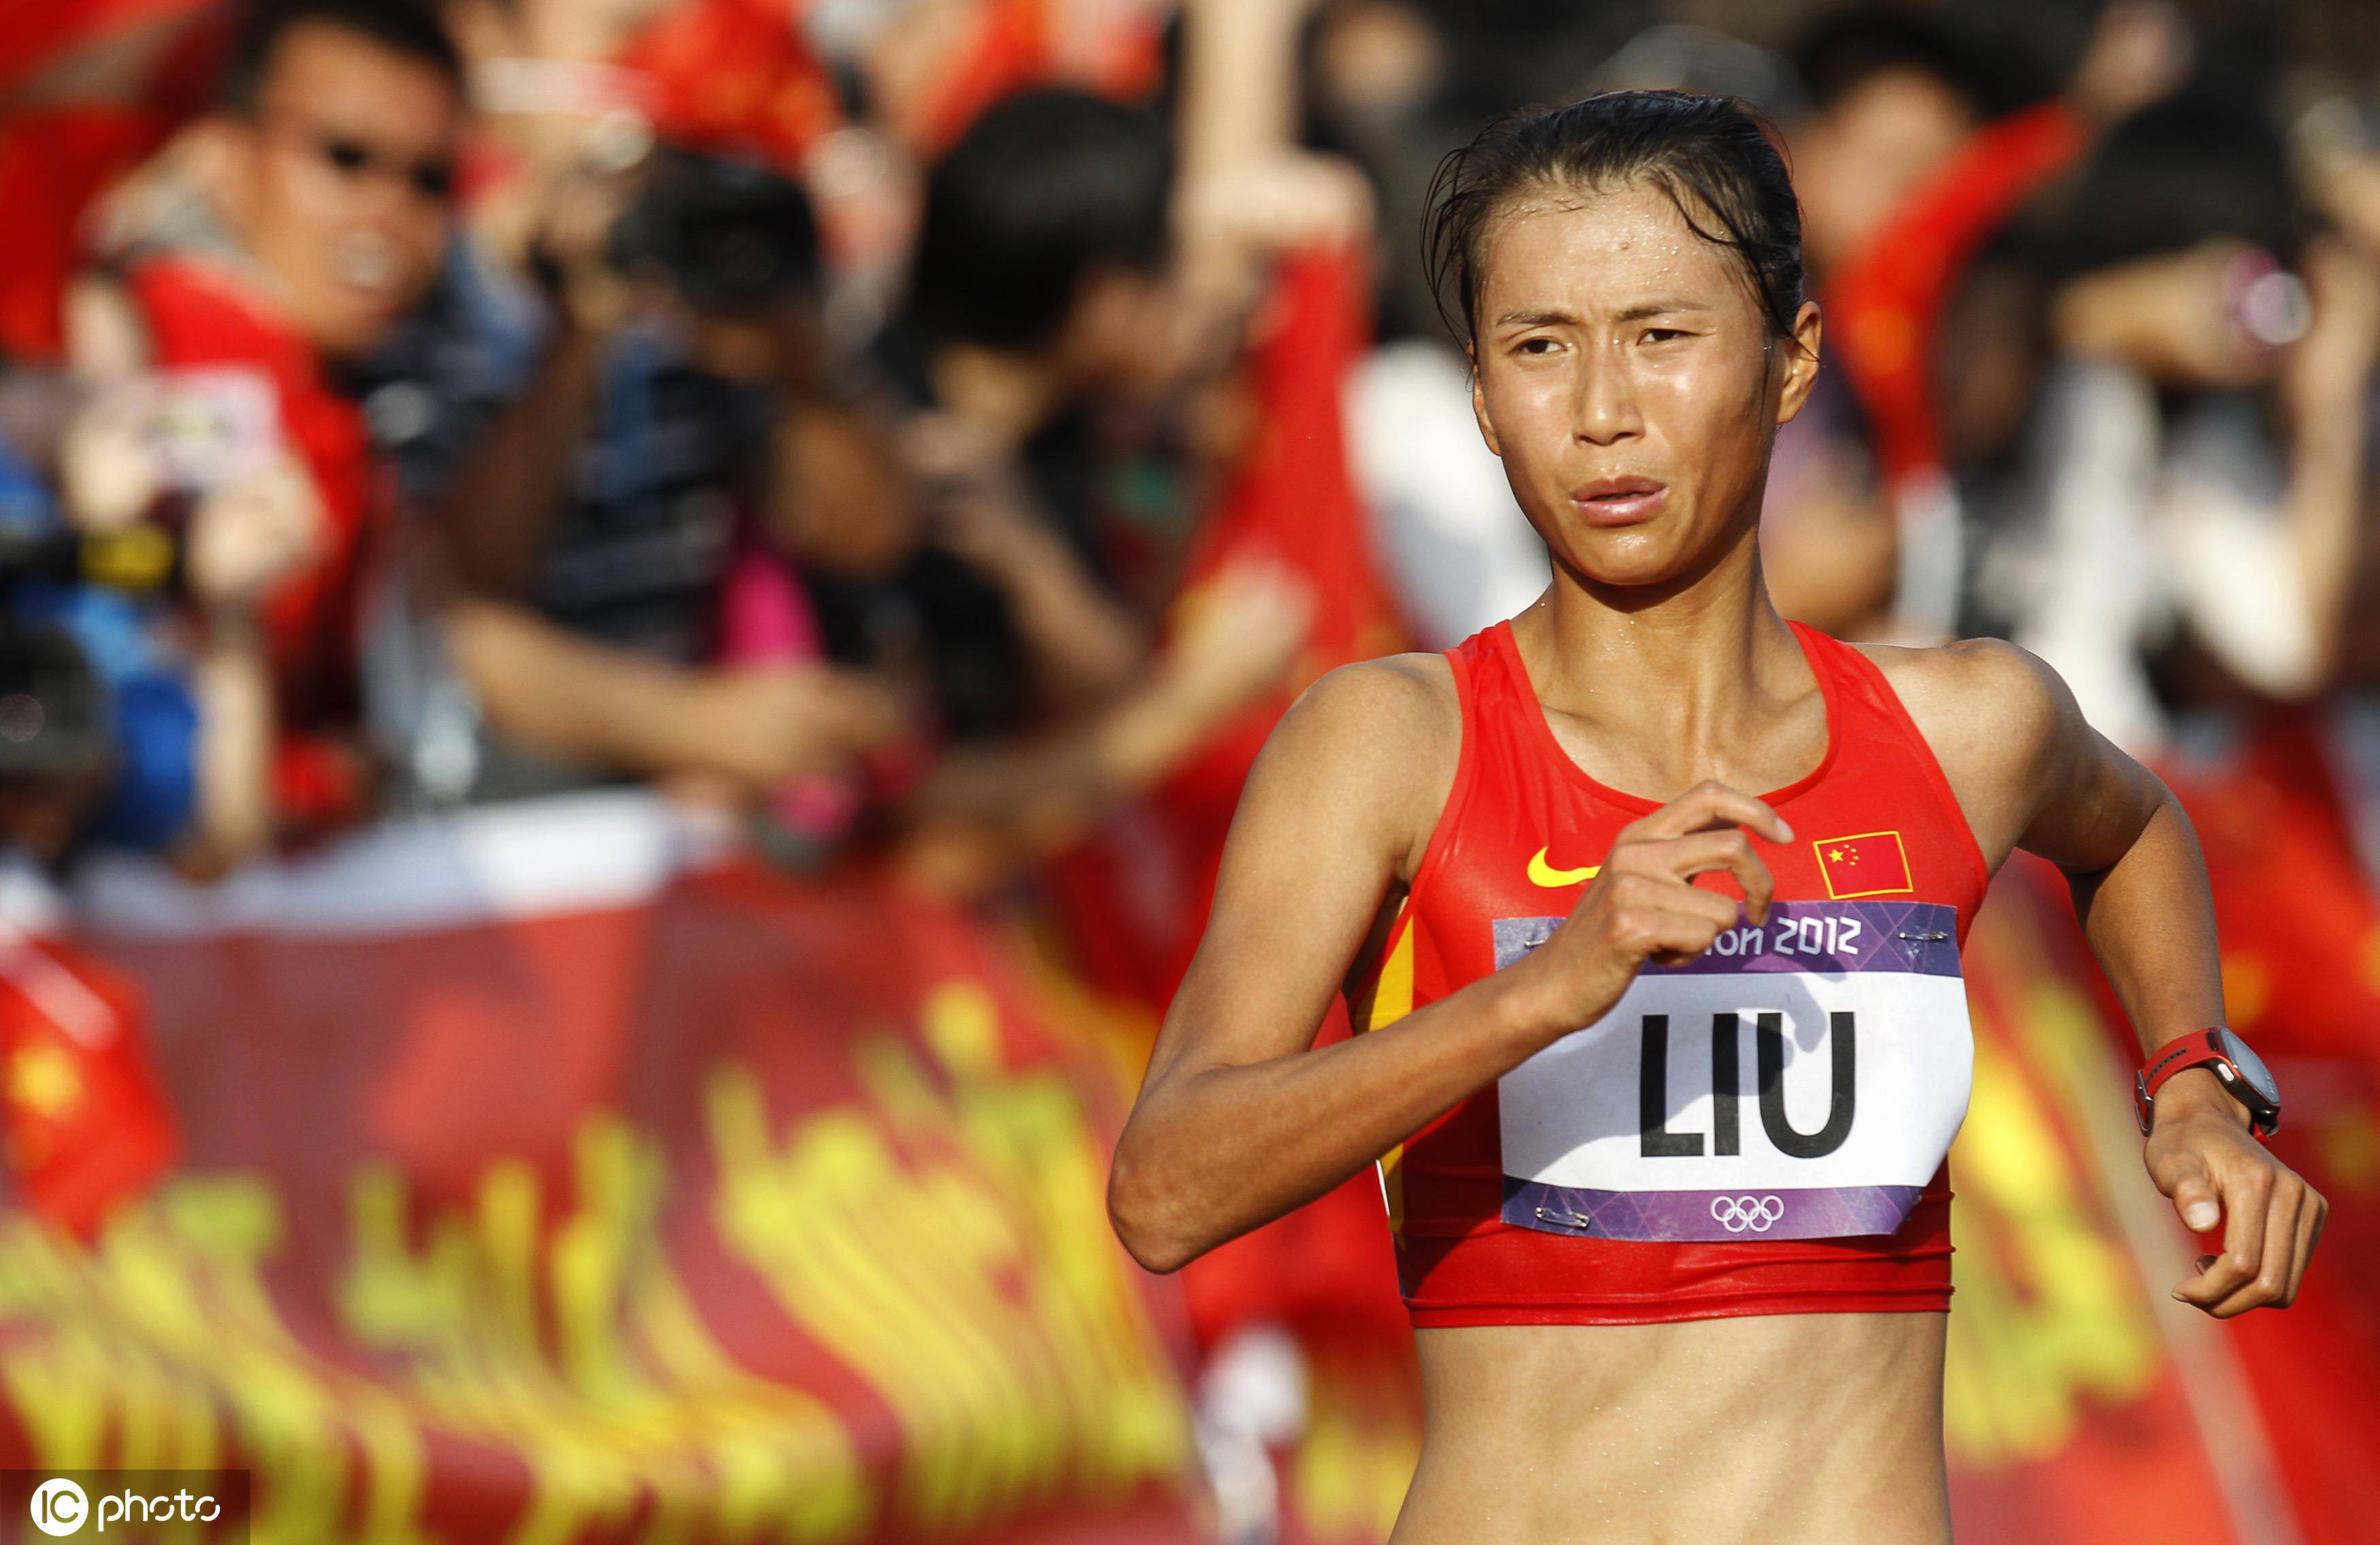 里约奥运会女子20公里竞走决赛,刘虹以1小时28分35秒的成绩获得冠军.